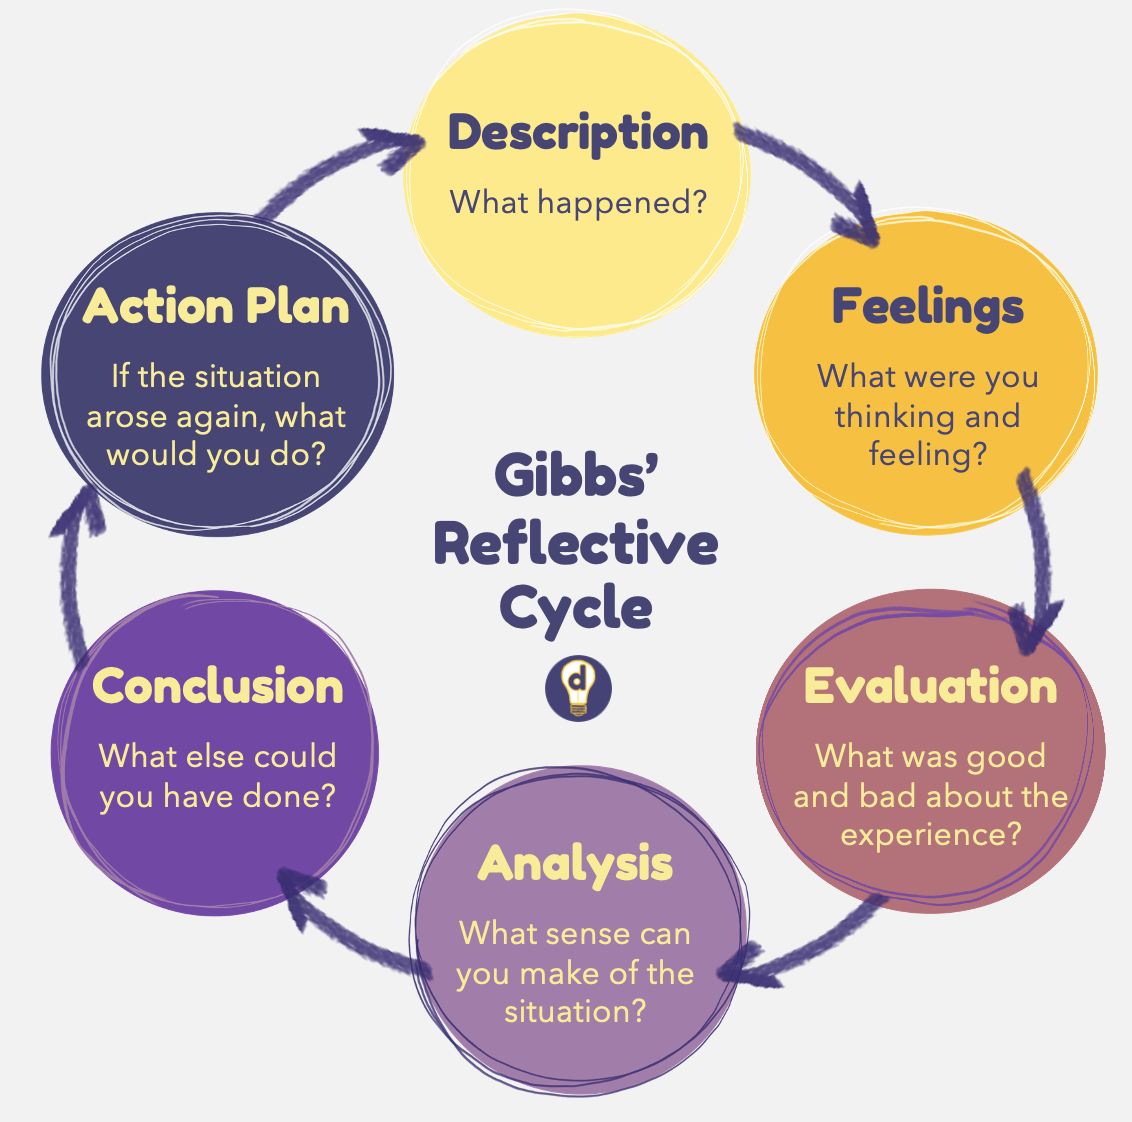 Gibbs' Reflective Cycle